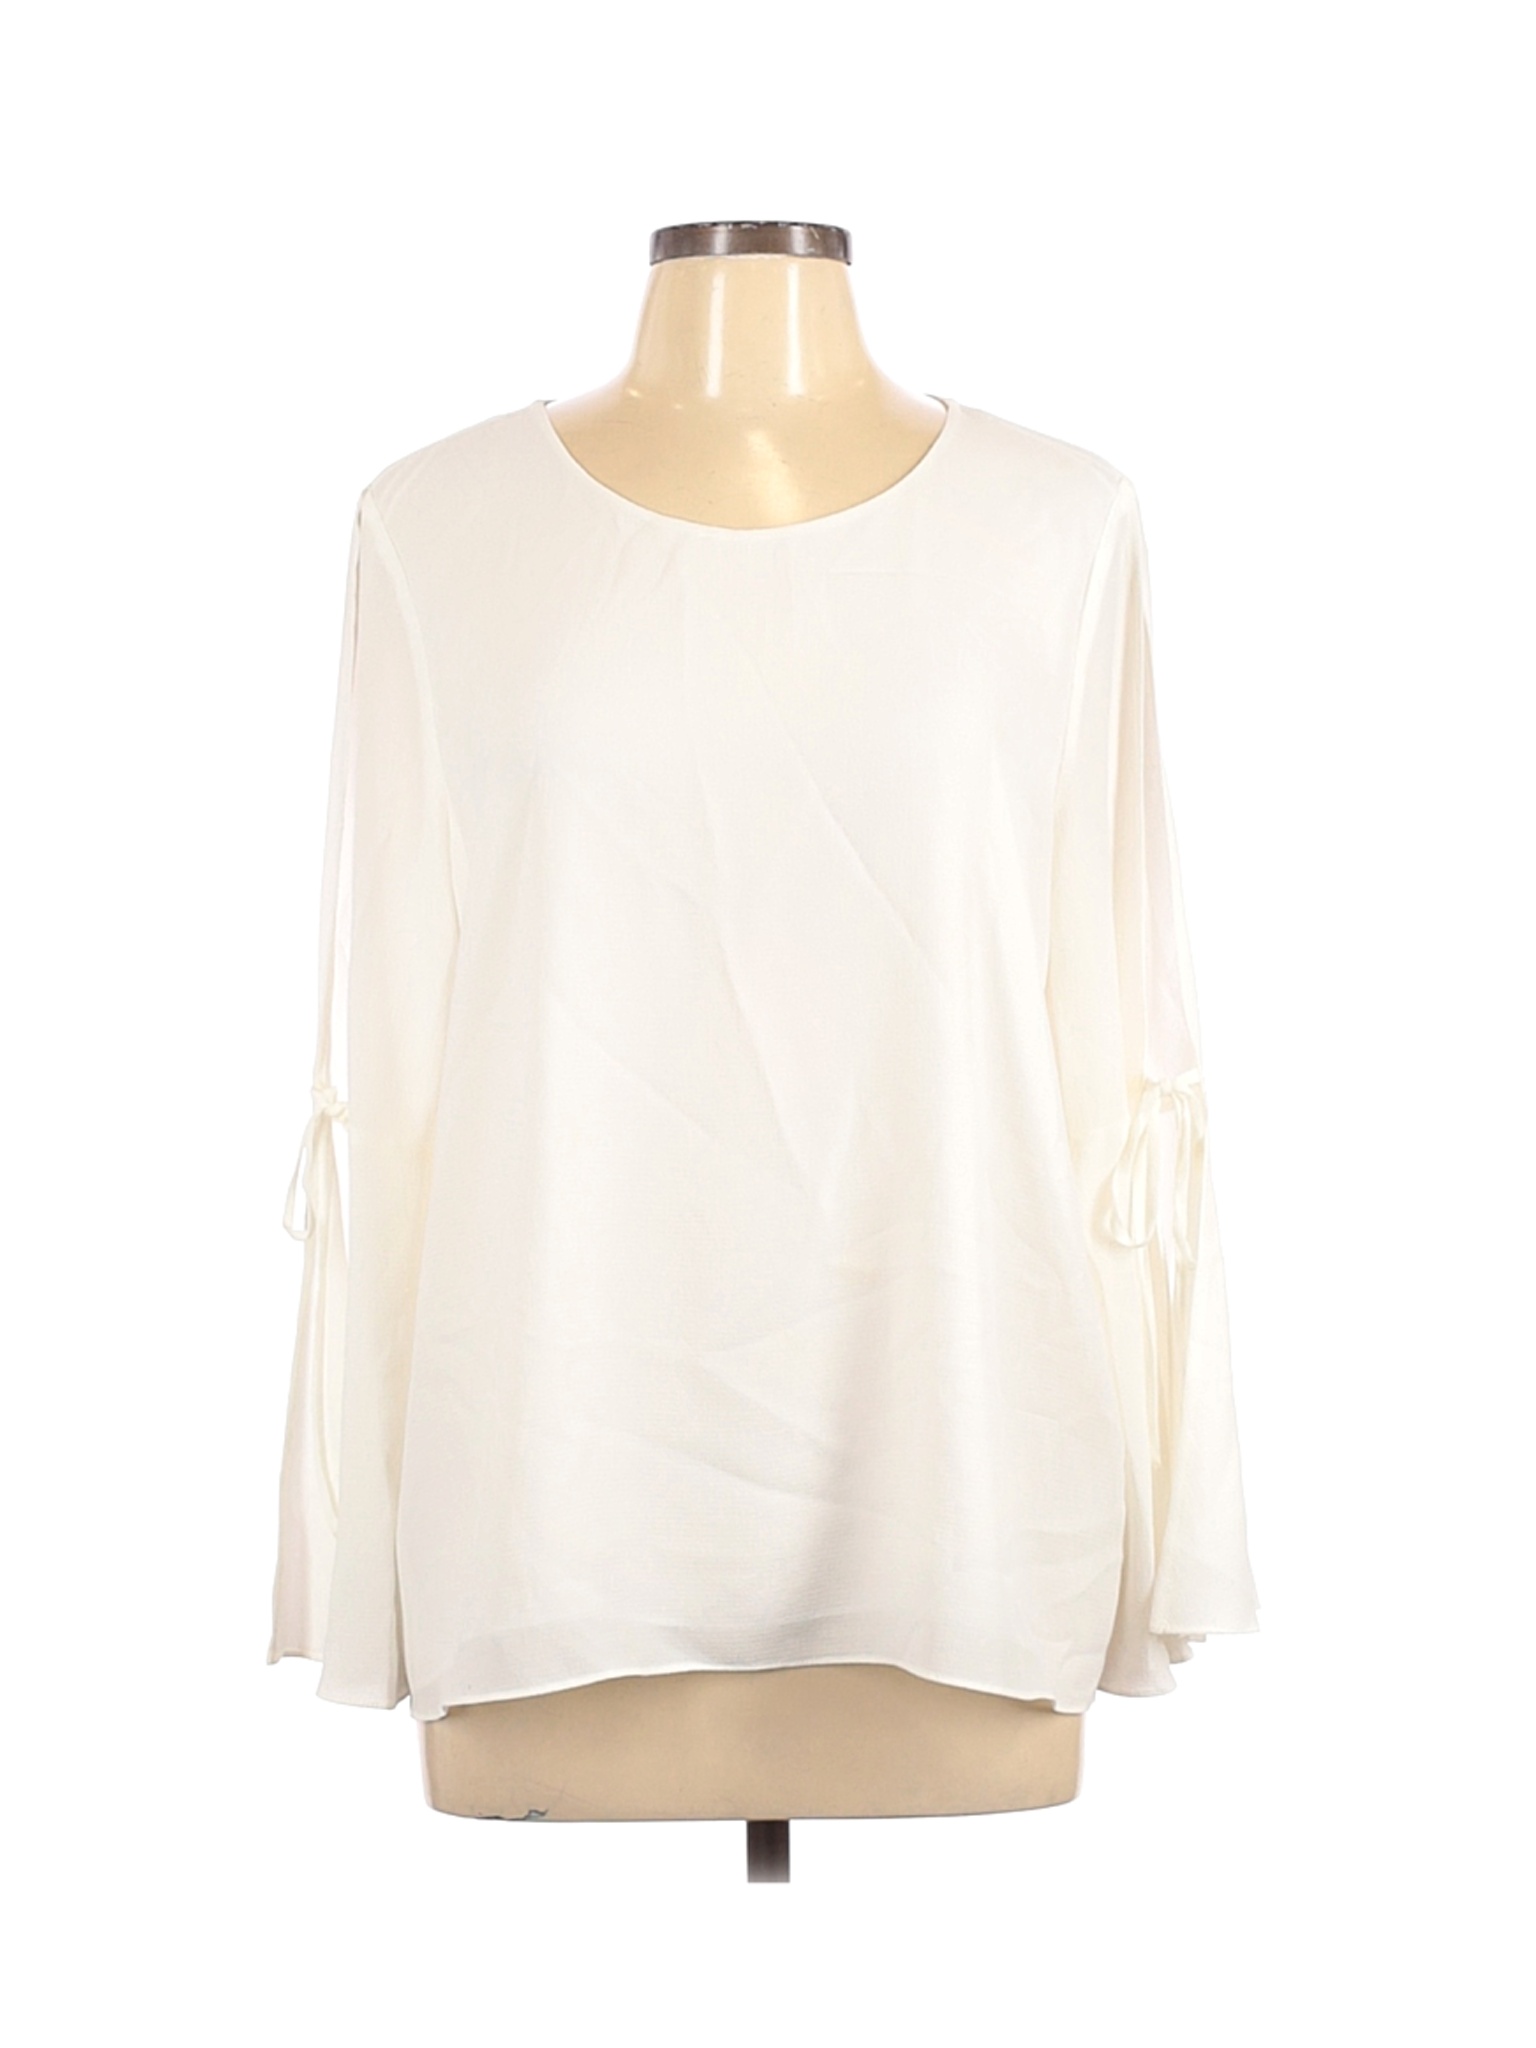 CeCe Women Ivory Long Sleeve Blouse L | eBay